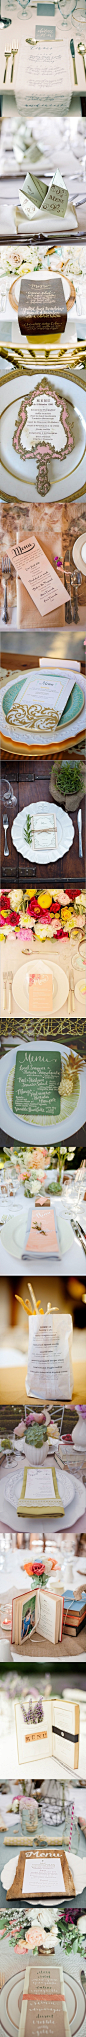 #婚礼布置#16款创意婚宴餐单设计，不但能带给宾客新鲜感，还可以表达新人的用心，让宾客在看菜单，等待美食的时候，多了一个有趣的话题。 更多: http://www.lovewith.me/share/detail/all/30658